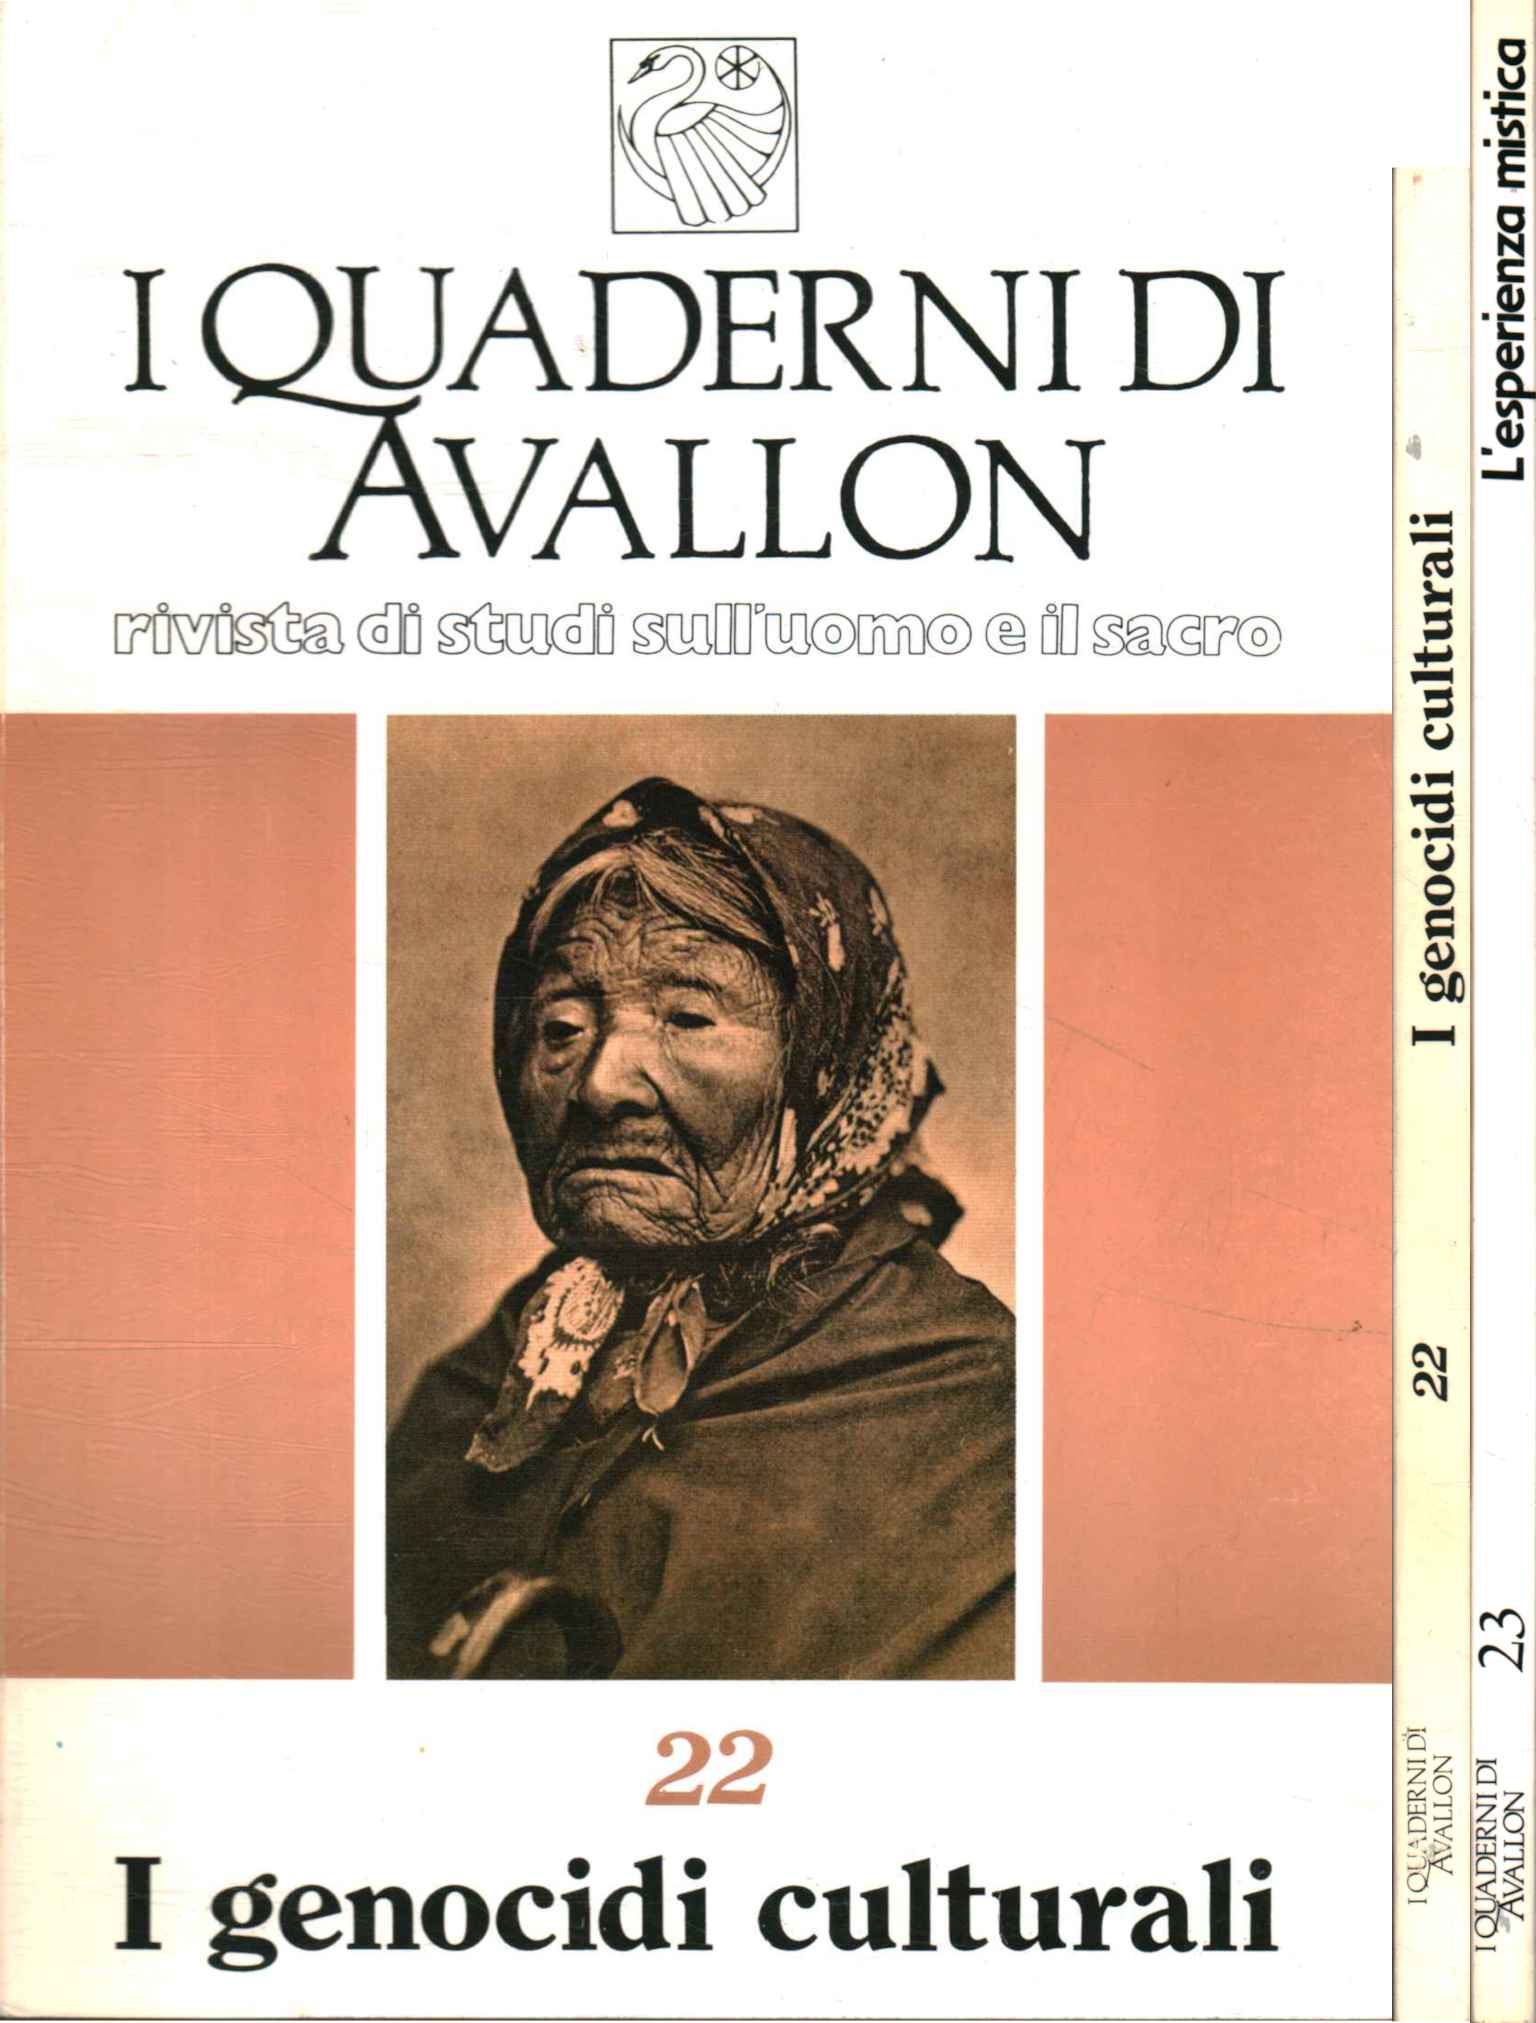 Los cuadernos de Avallon. diario de estudio